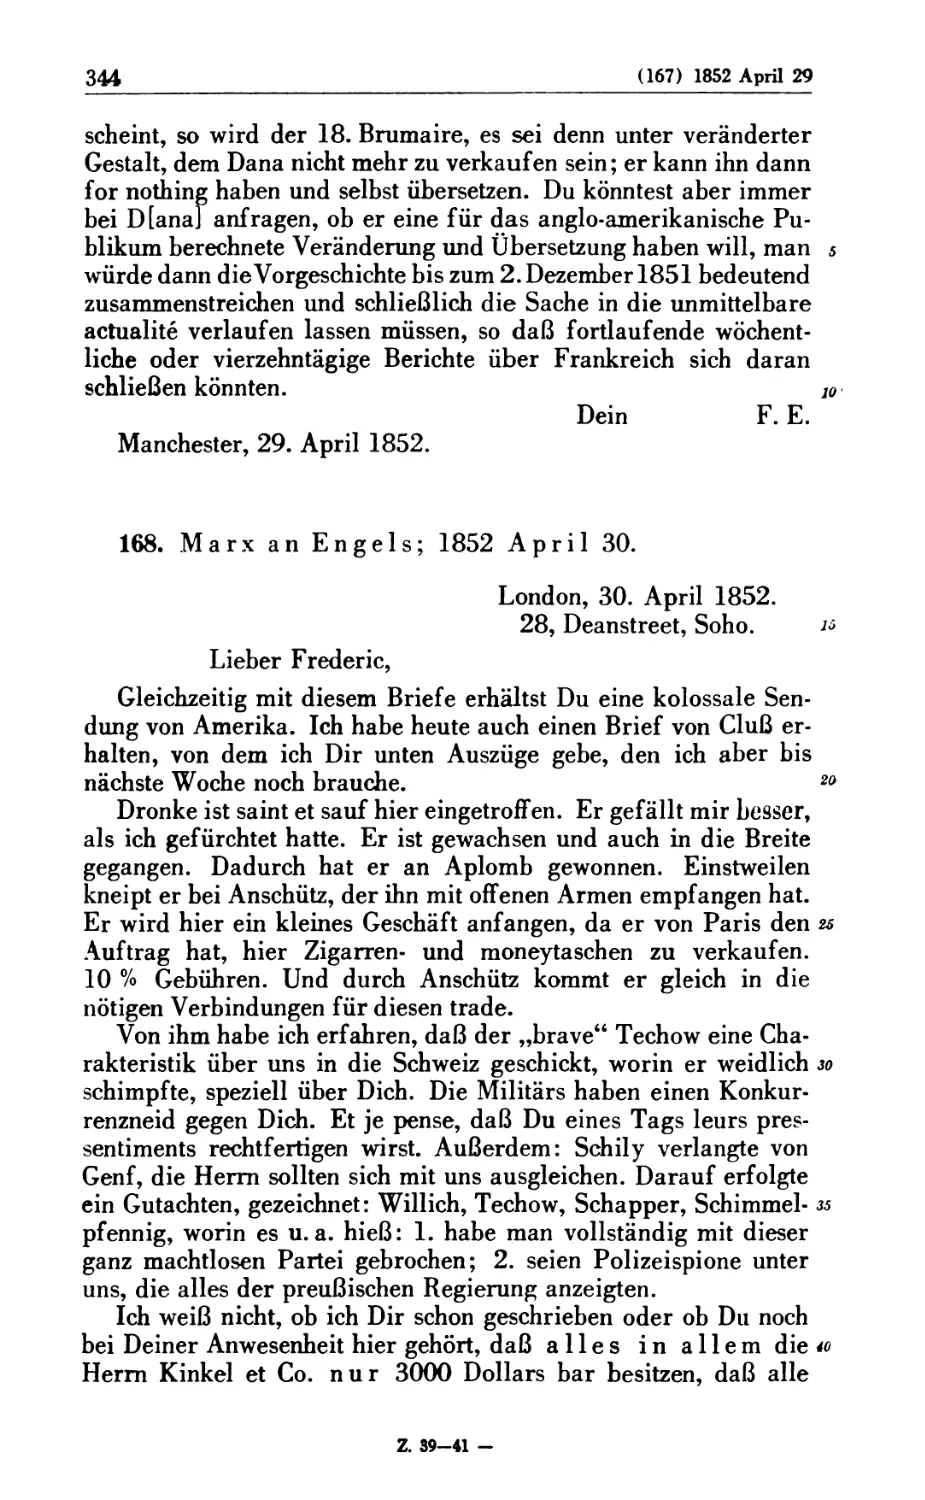 168. Marx an Engels; 1852 April 30